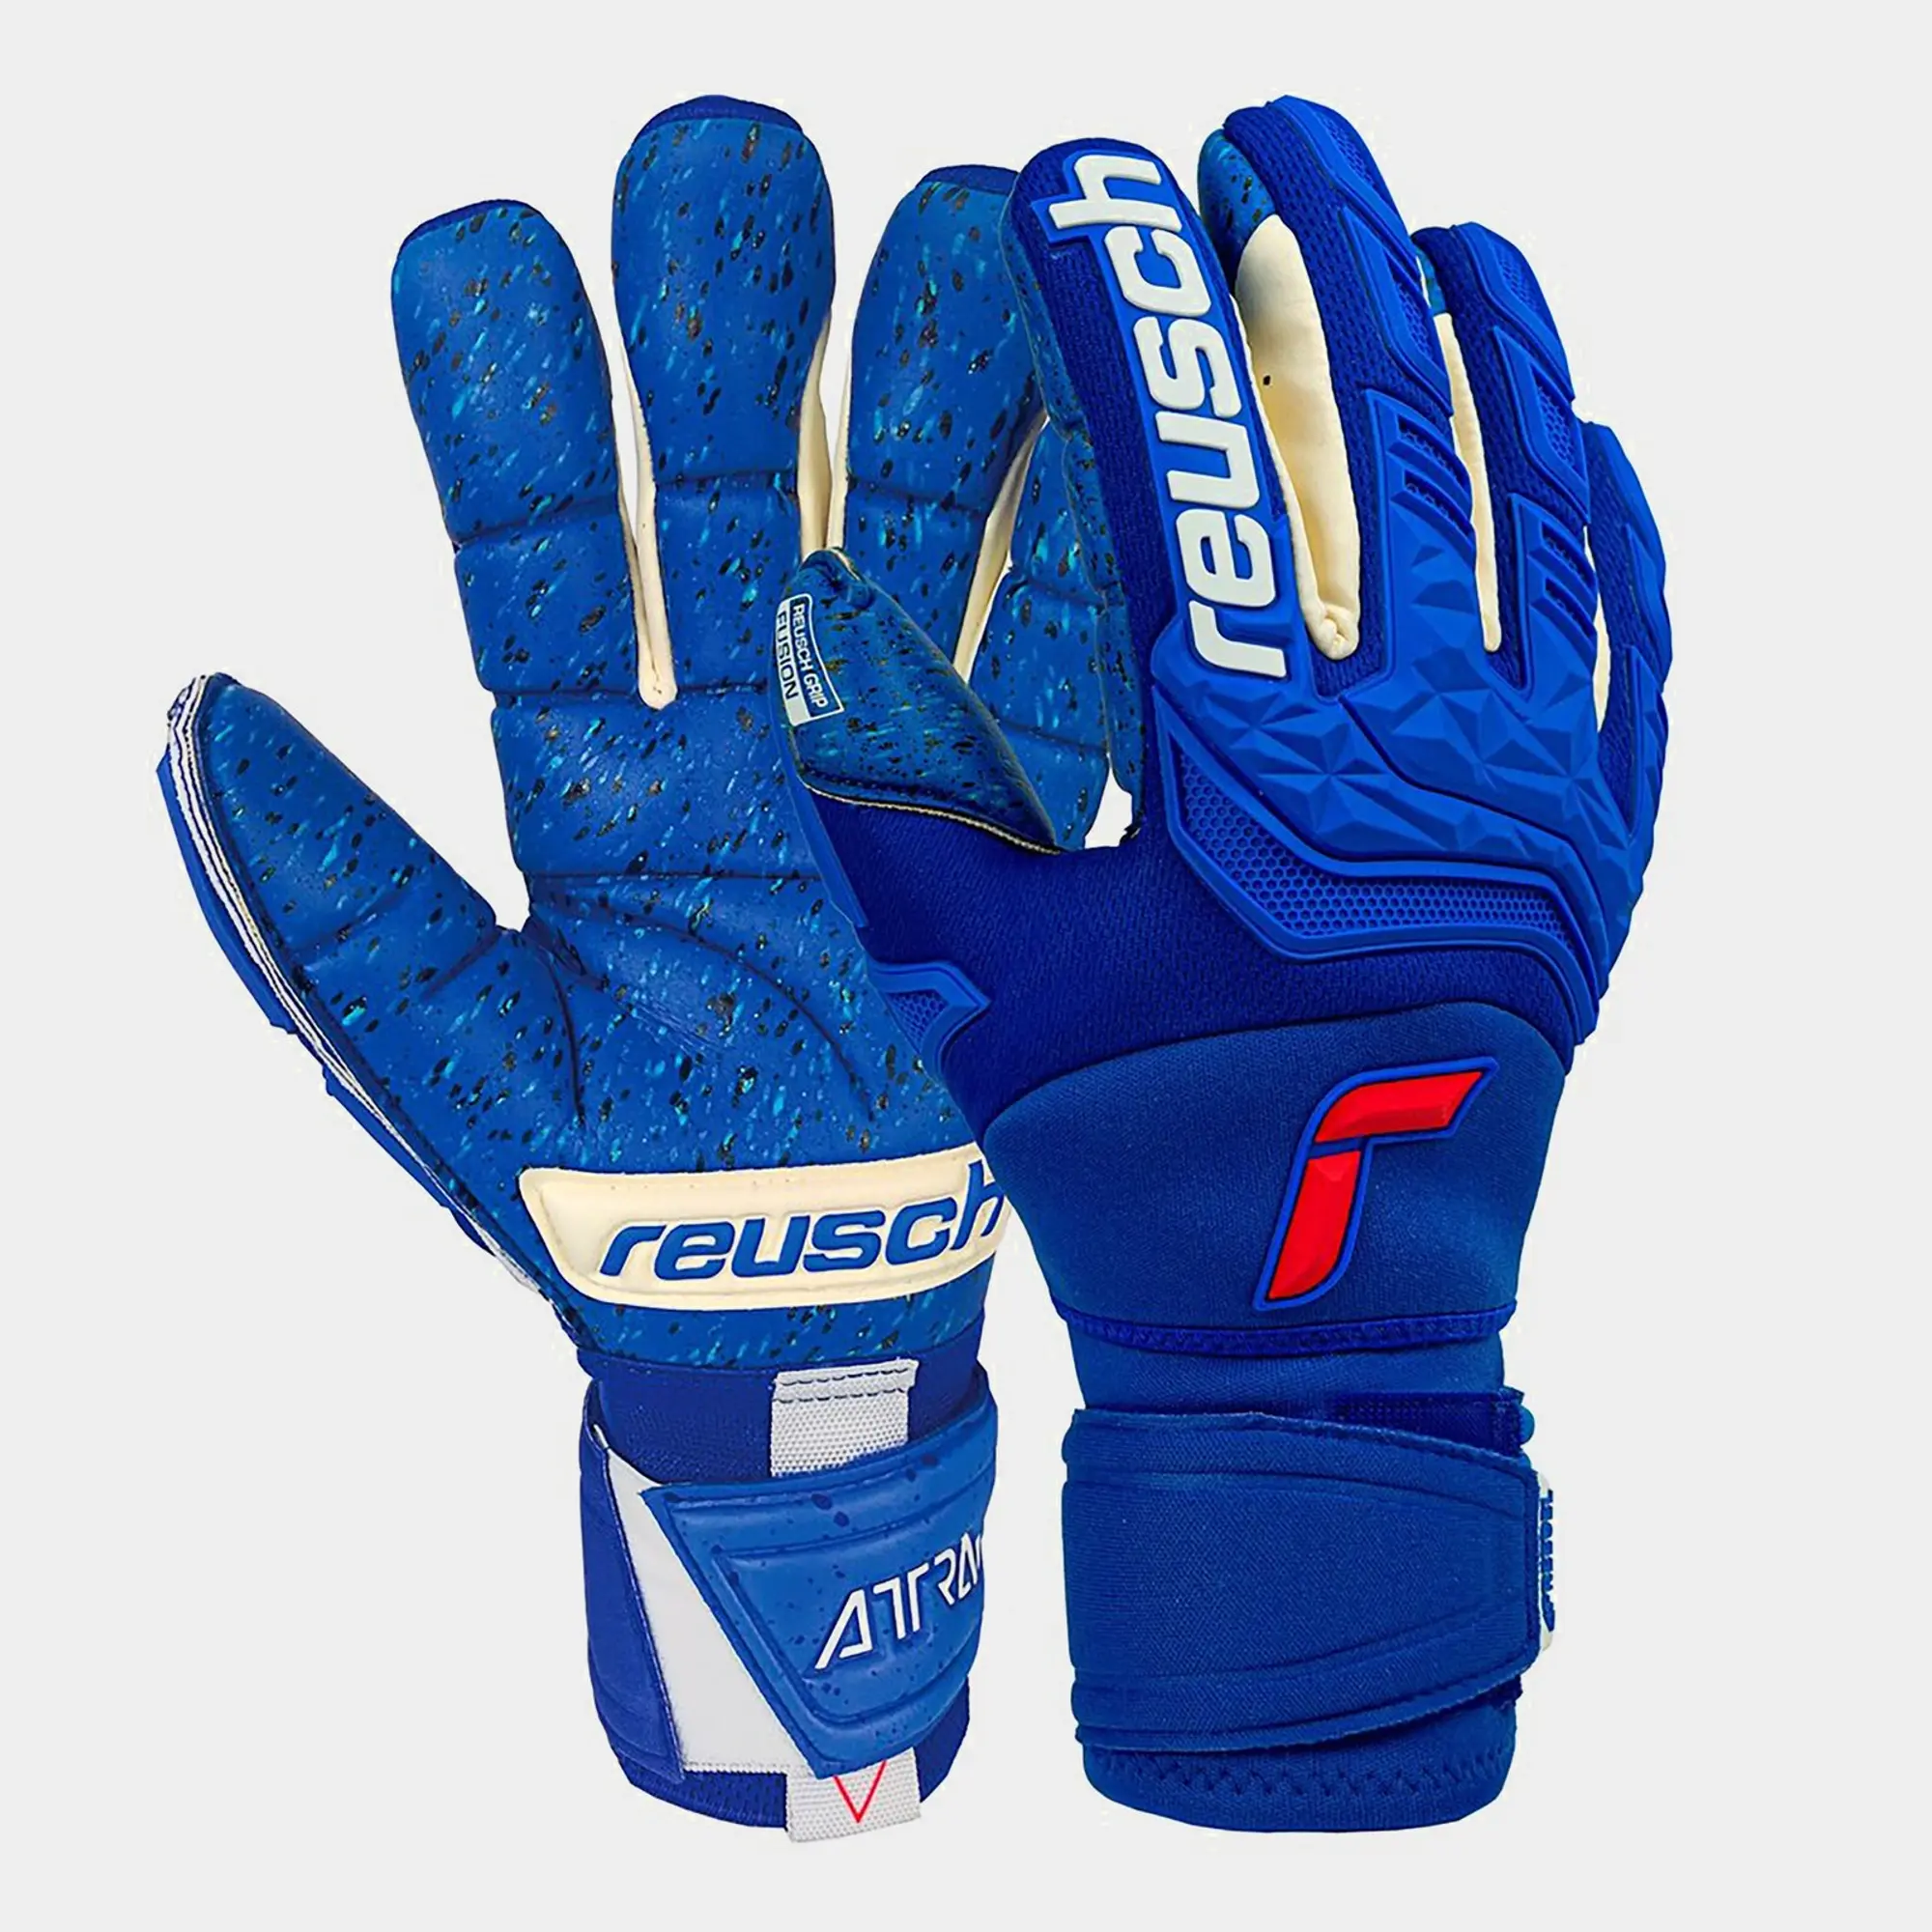 Reusch Attrakt Goalkeeper Gloves